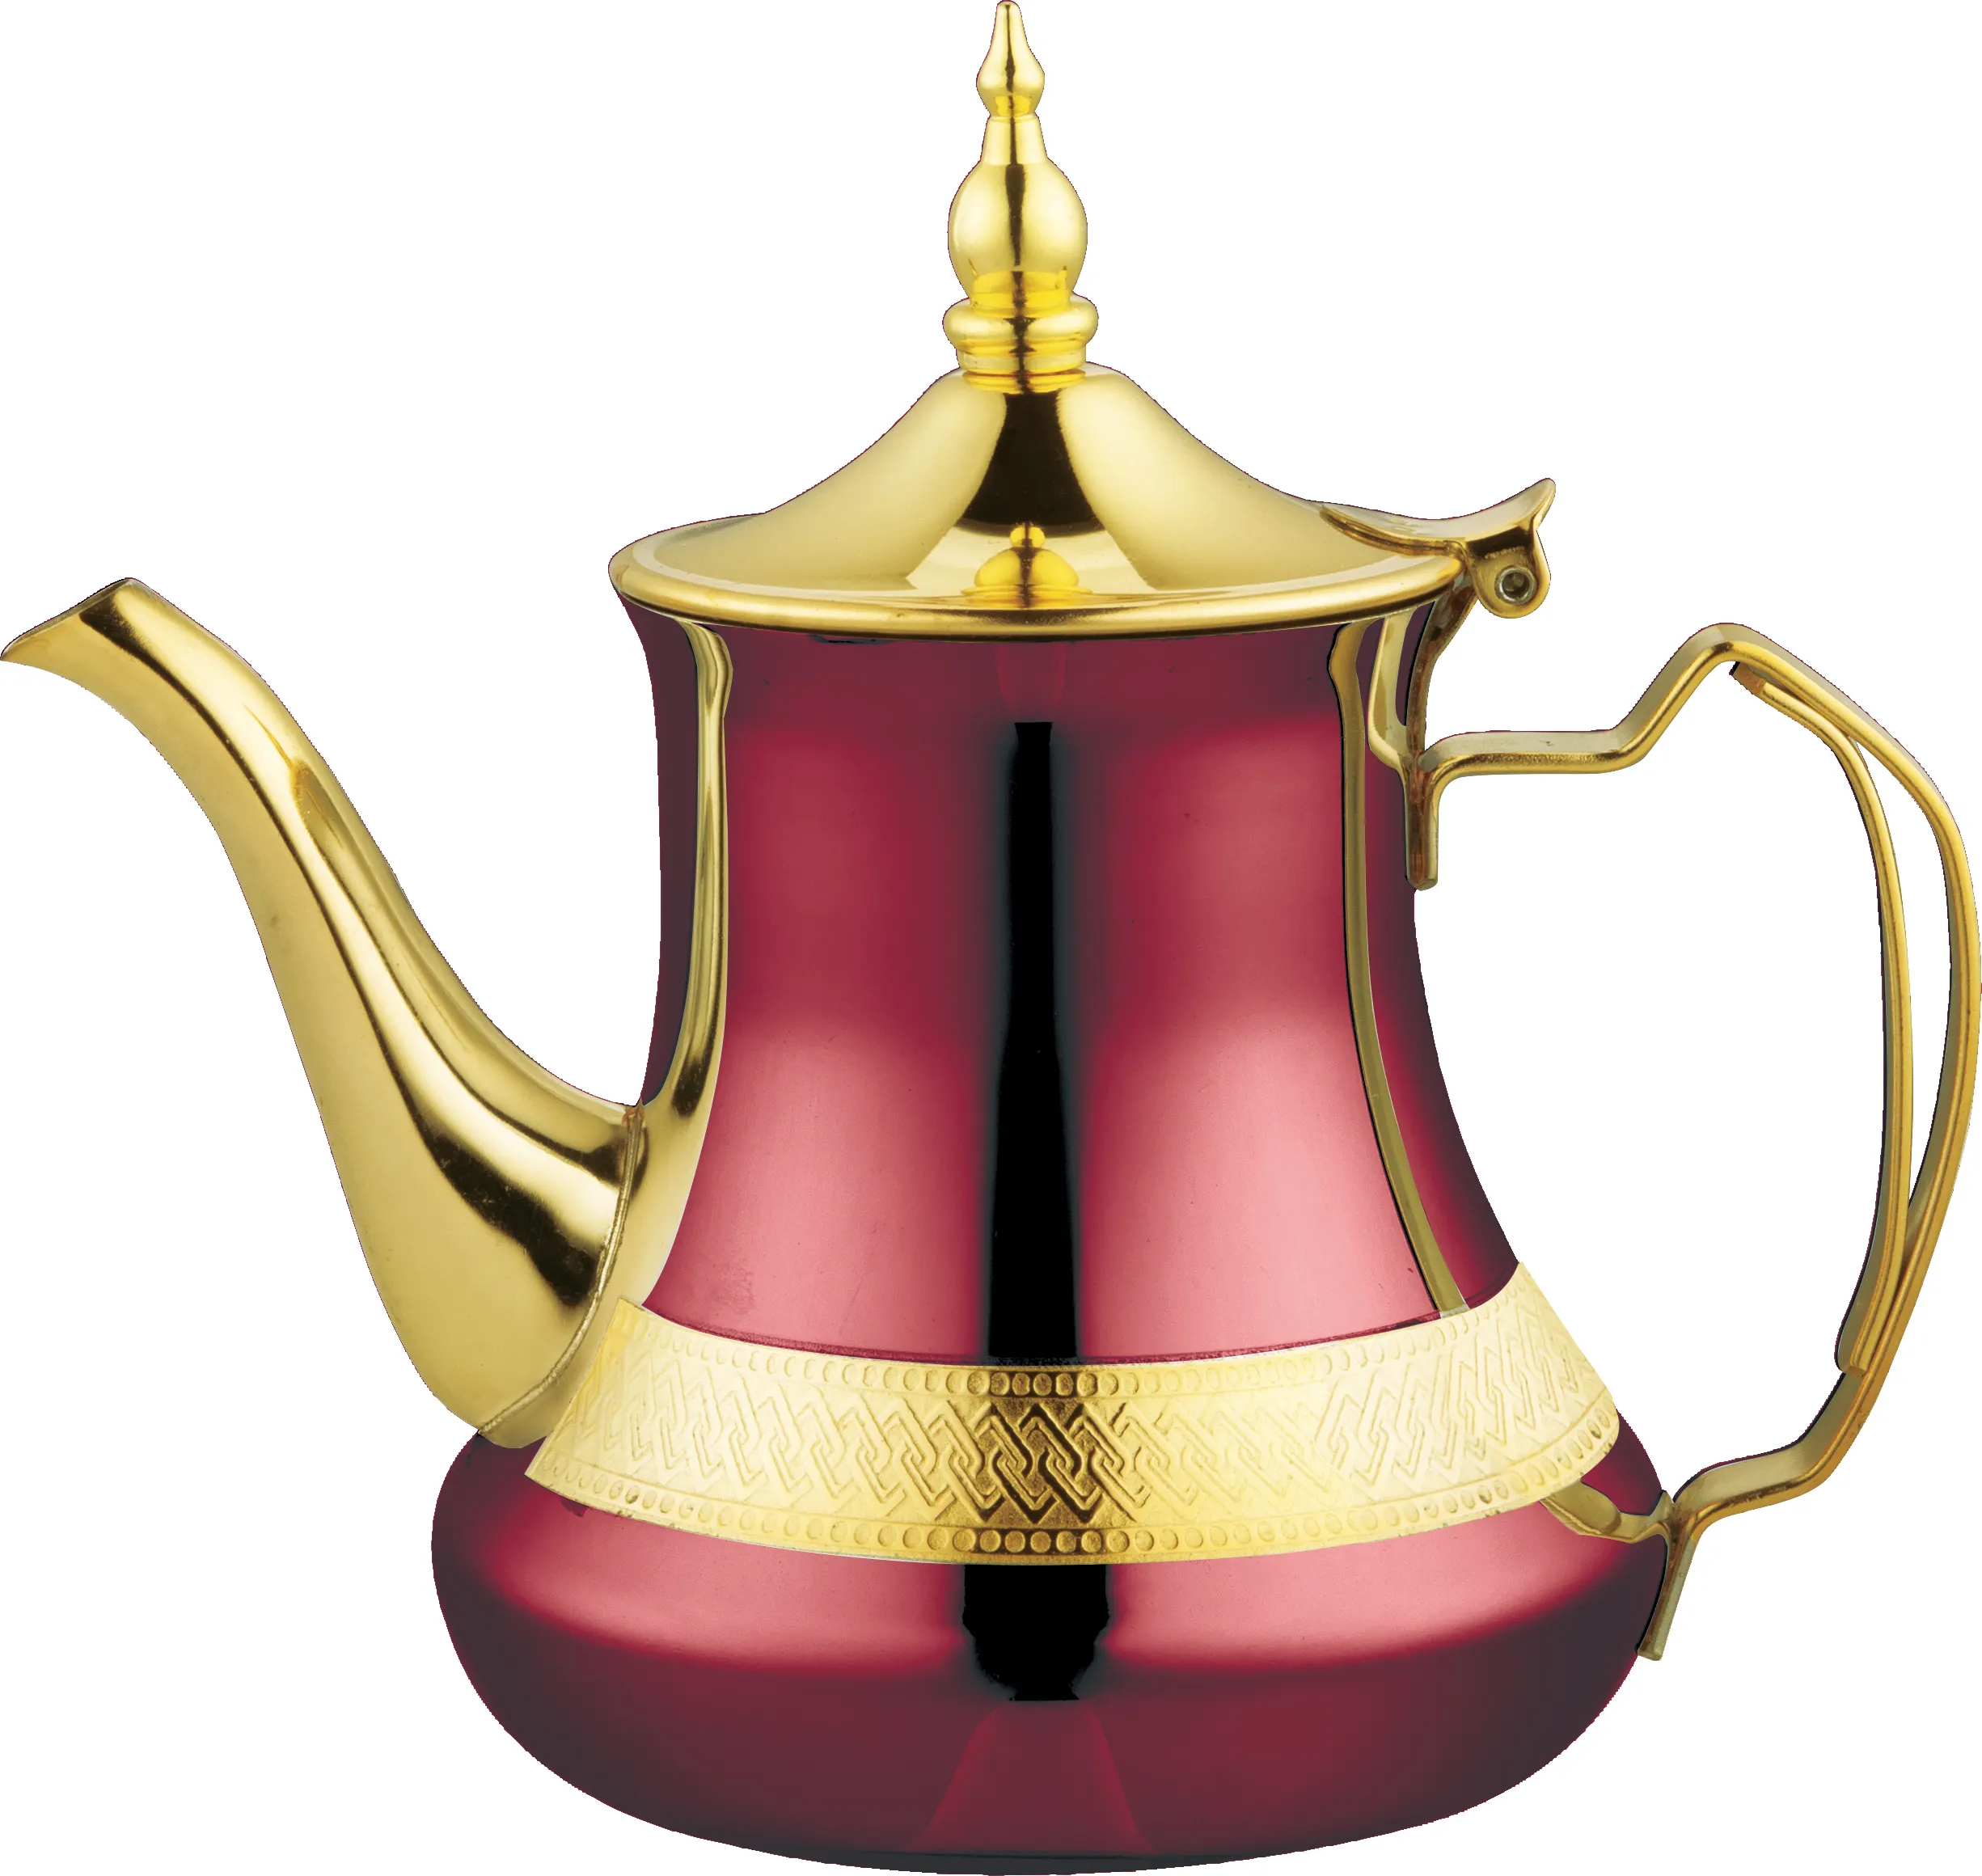 Ketel teh emas baja tahan karat Dekorasi teko kopi teko teh Arab Turki Maroko ketel teh dengan pegangan